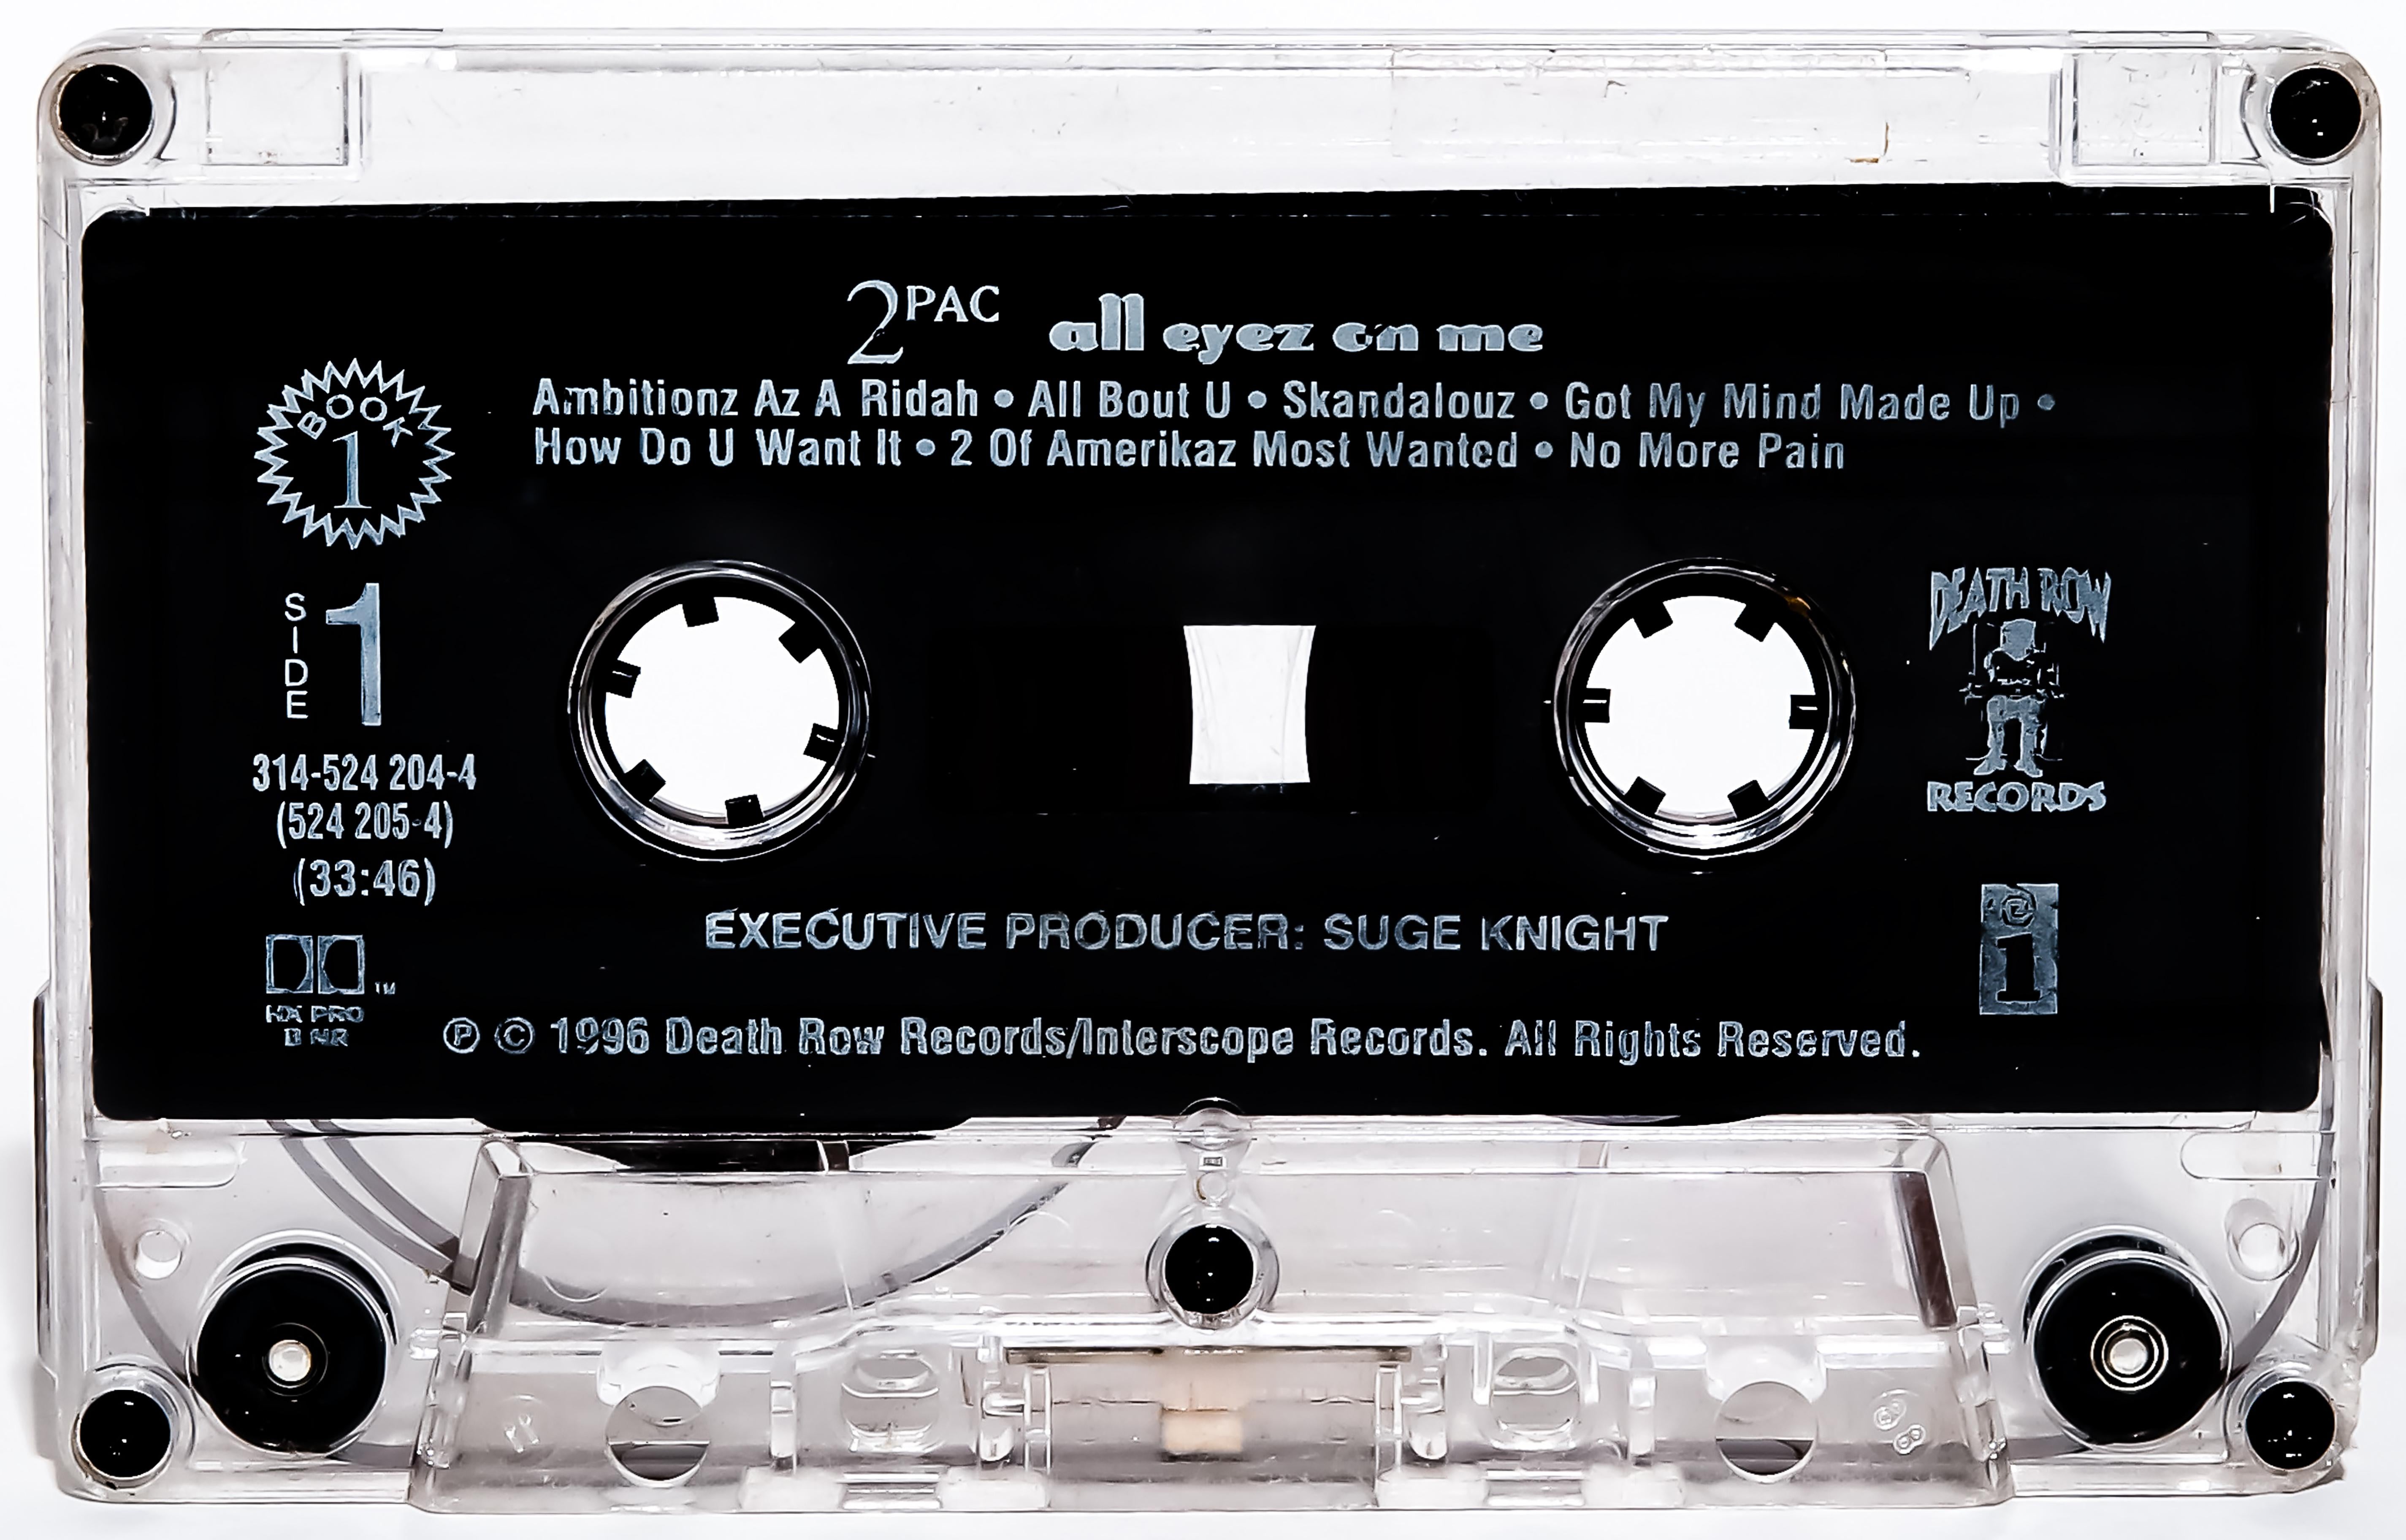 Ein zeitgenössisches Foto von 2Pacs kultigem "All eyez on me"-Kassettenband.
Dies ist die erste Veröffentlichung in der mit Spannung erwarteten Serie "The Music" von Pop Artists Destro
Diese kultigen Bänder sind mehr als nur zeitlos geworden  Musik.